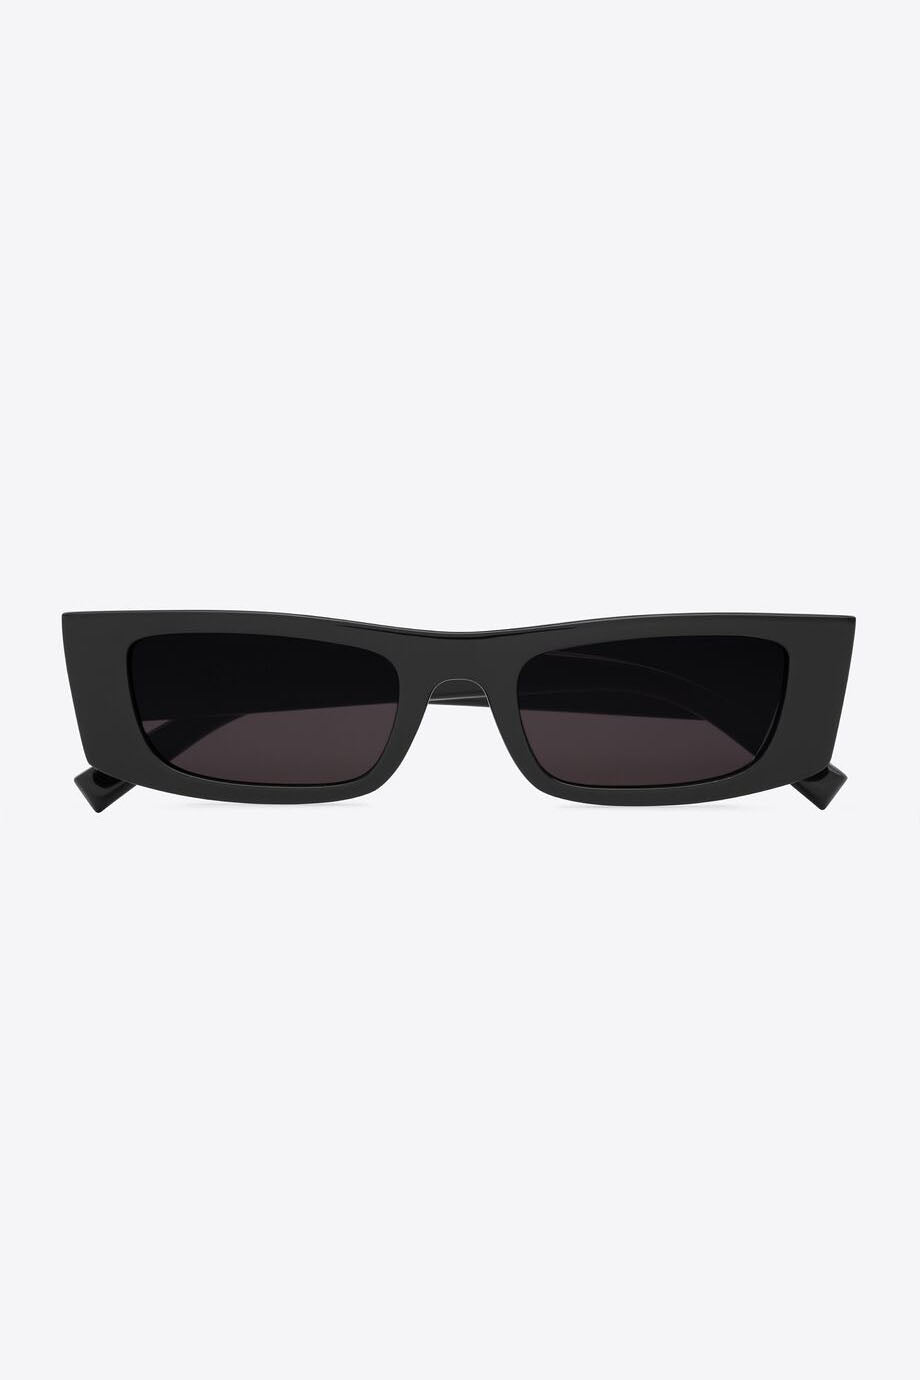 Saint Laurent Rectangular Sunglasses SL553 001